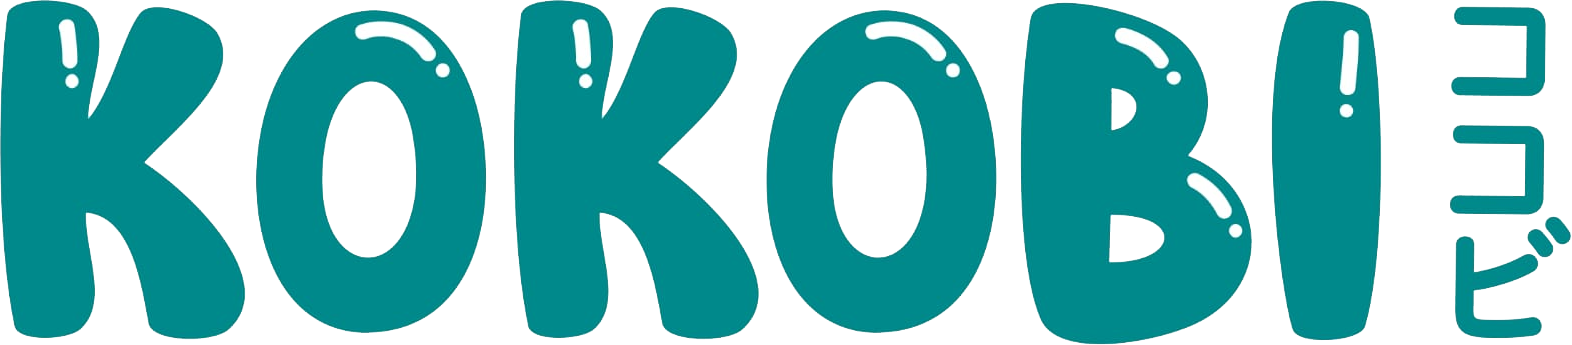 Logo Kokobi trans